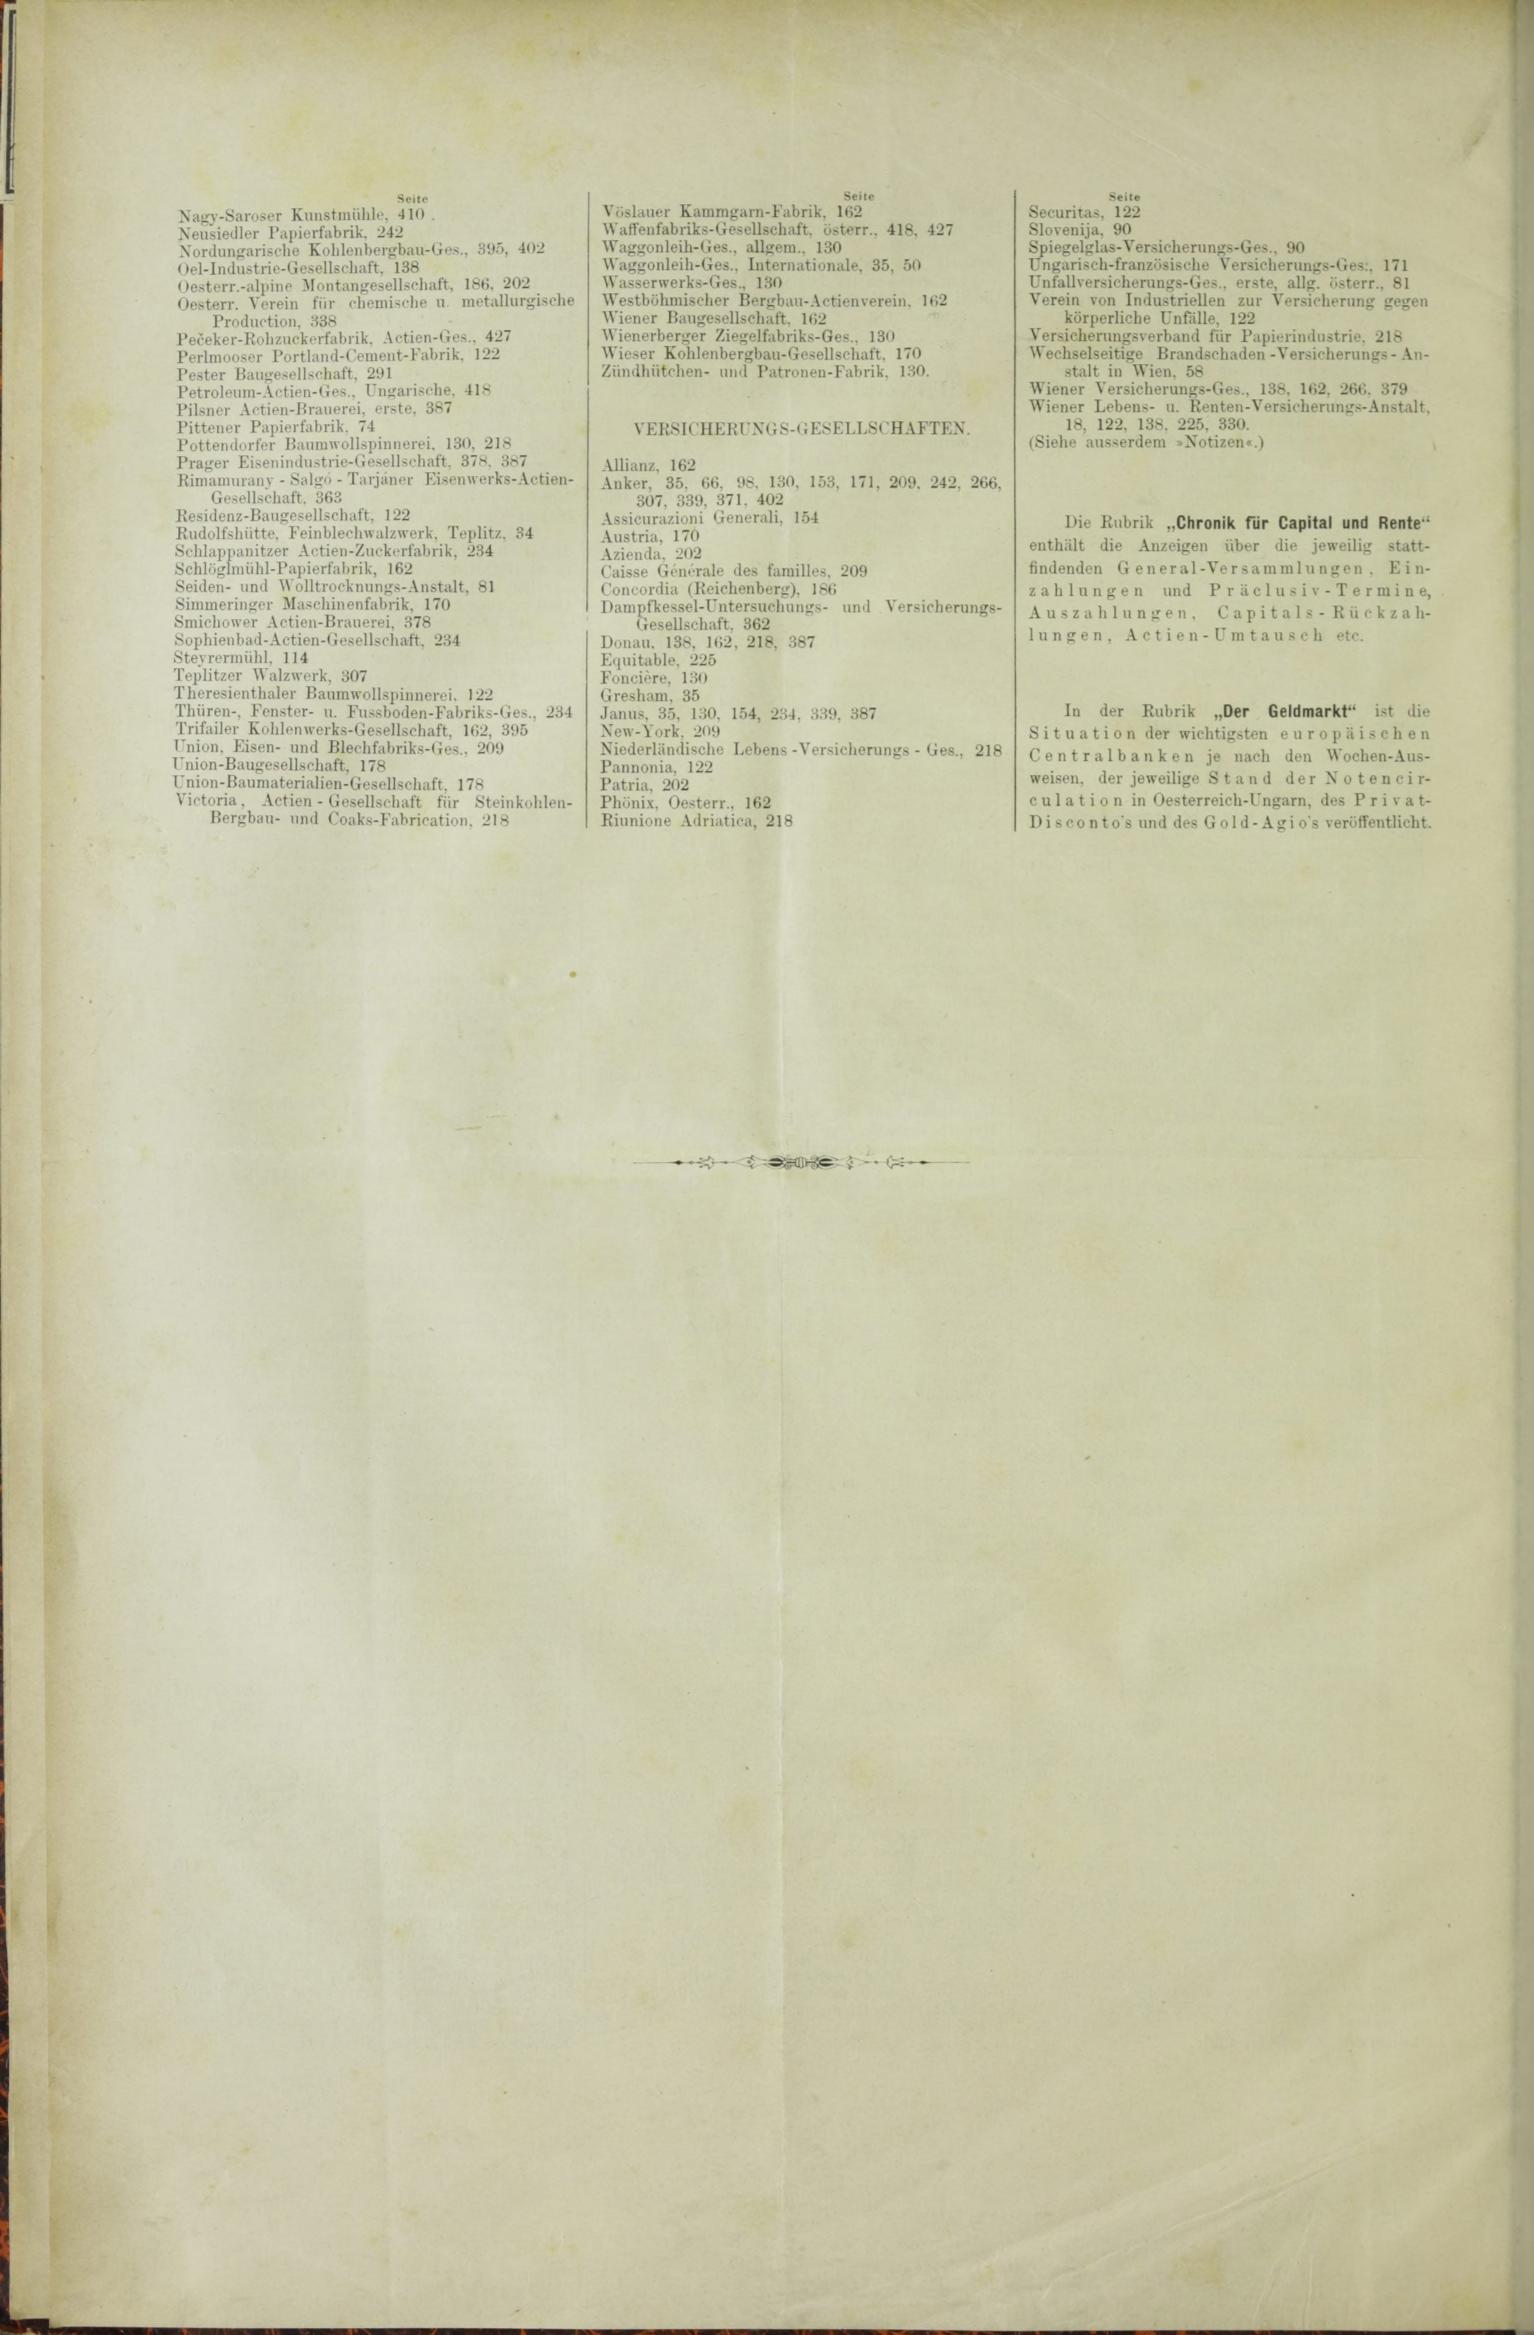 Der Tresor 23.07.1885 - Seite 12